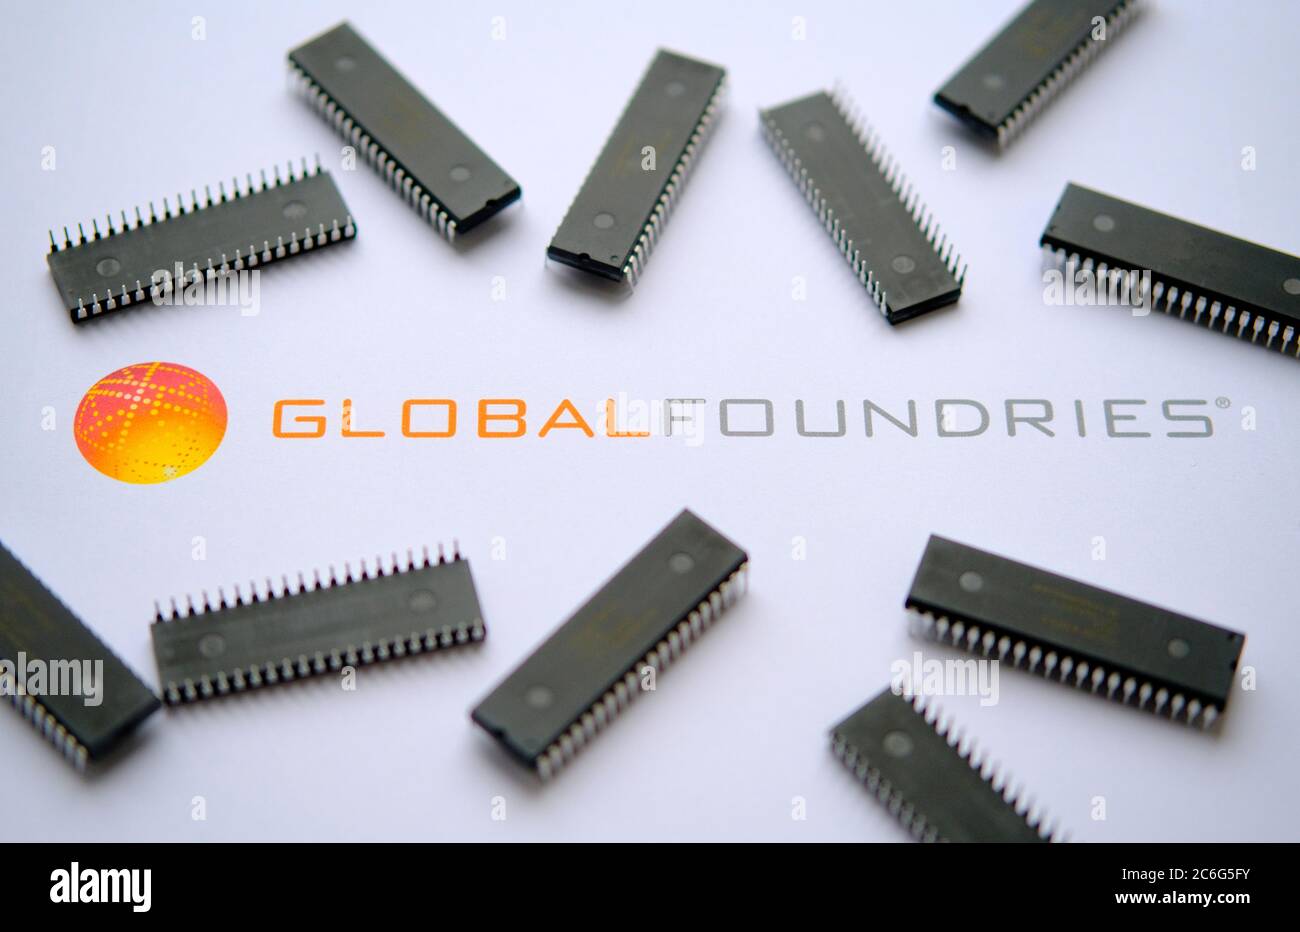 Stone / Regno Unito - 9 luglio 2020: Global Foundries - Semiconductor Logo del produttore sul documento stampato e grandi microchip collocati intorno. S Foto Stock